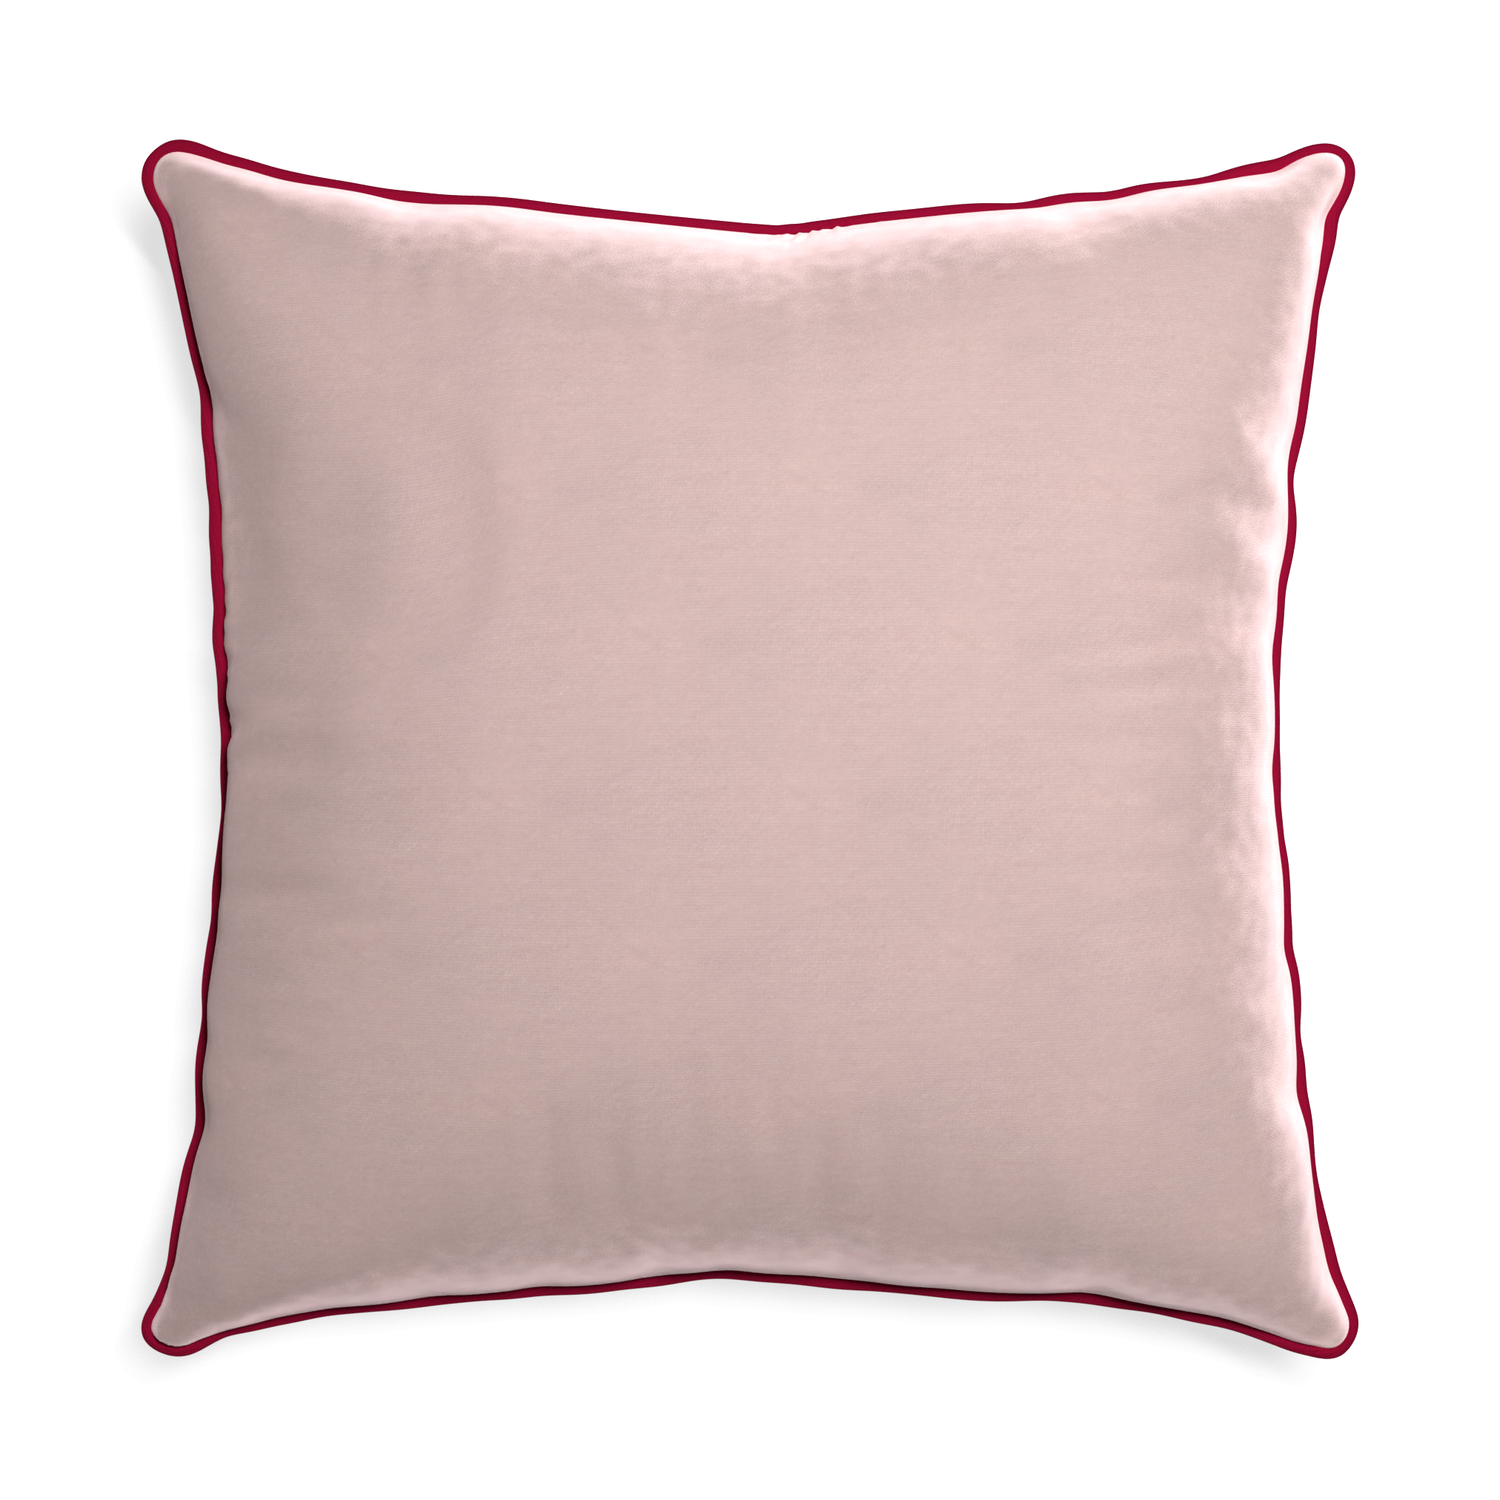 Euro-sham rose velvet custom pillow with raspberry piping on white background